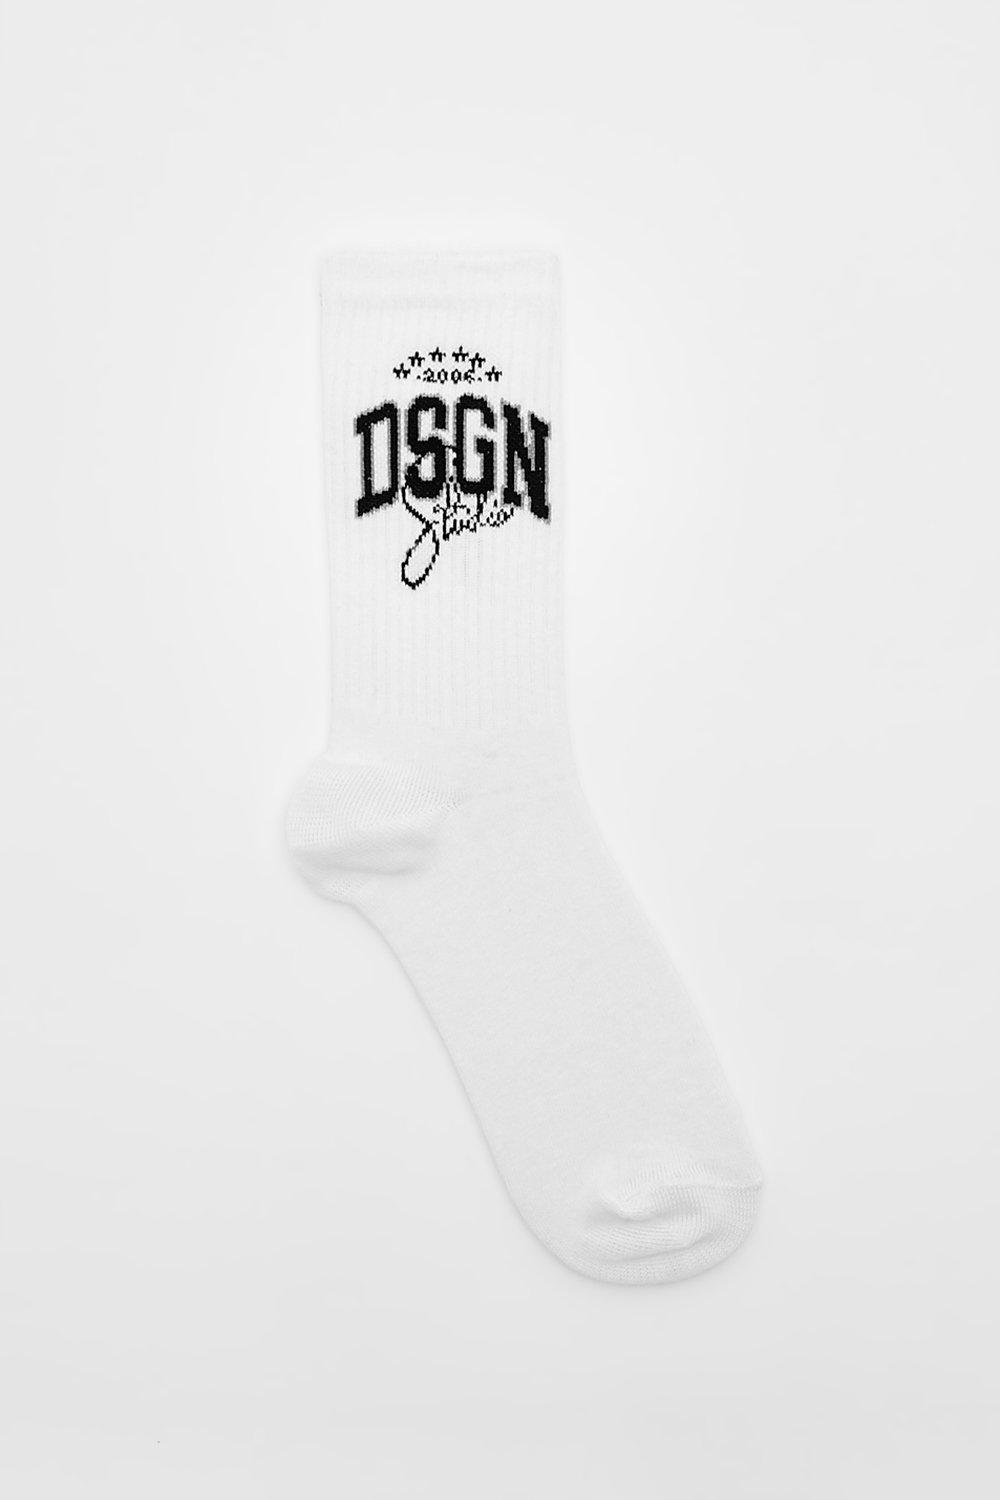 Спортивные носки Dsgn Studio boohoo, белый спортивные шорты dsgn studio с аппликациями boohoo серый